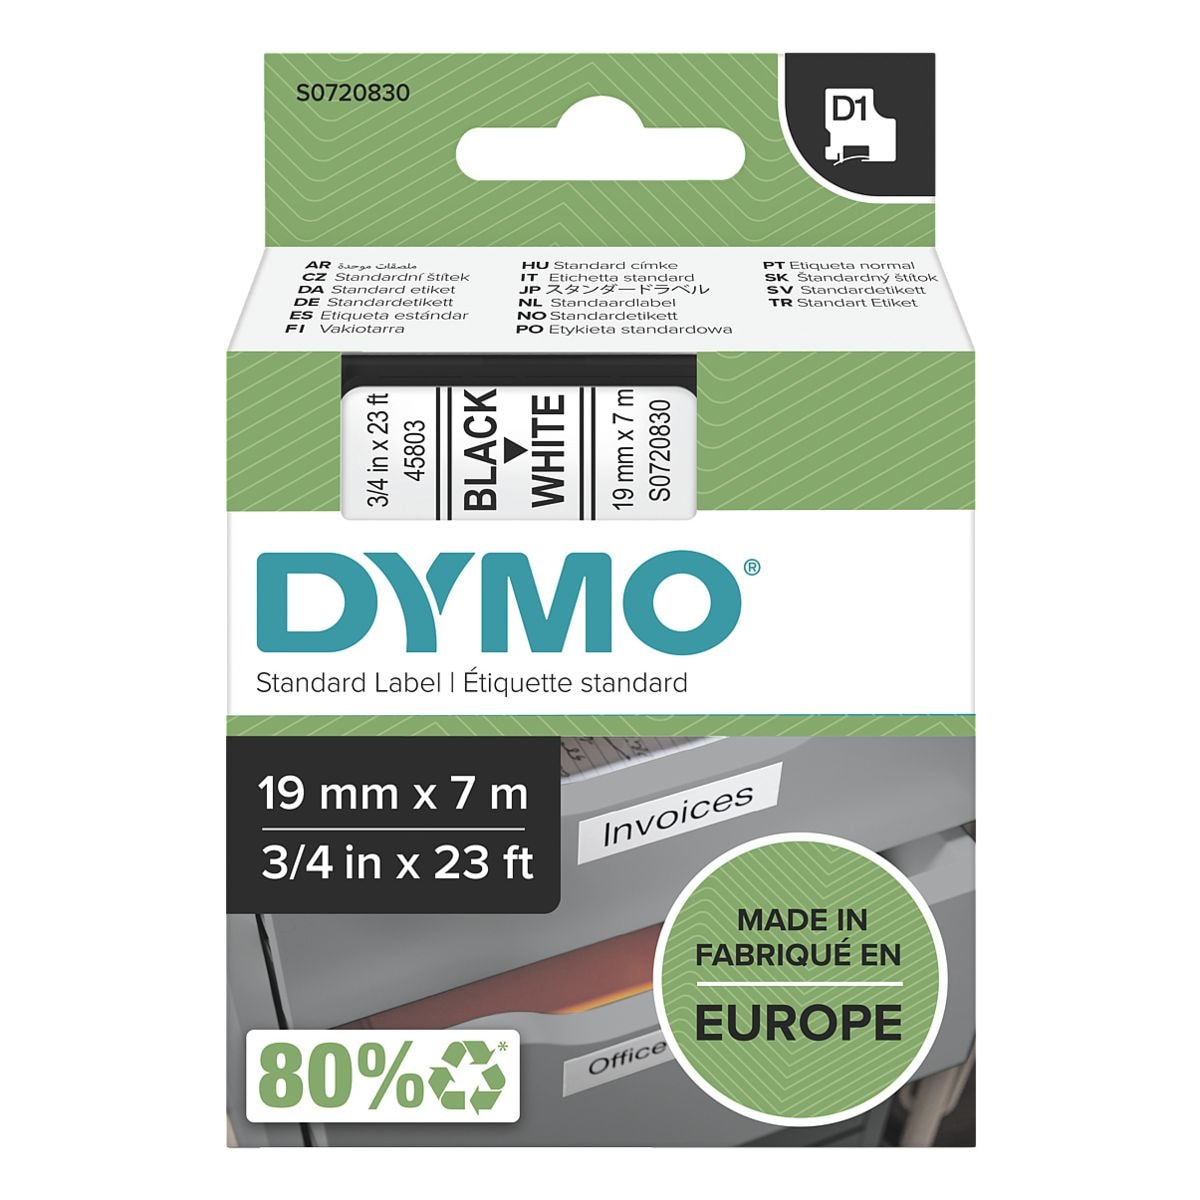 Dymo Beschriftungsband 19 mm x 7 m fr Dymo D1 Beschriftungsgerte